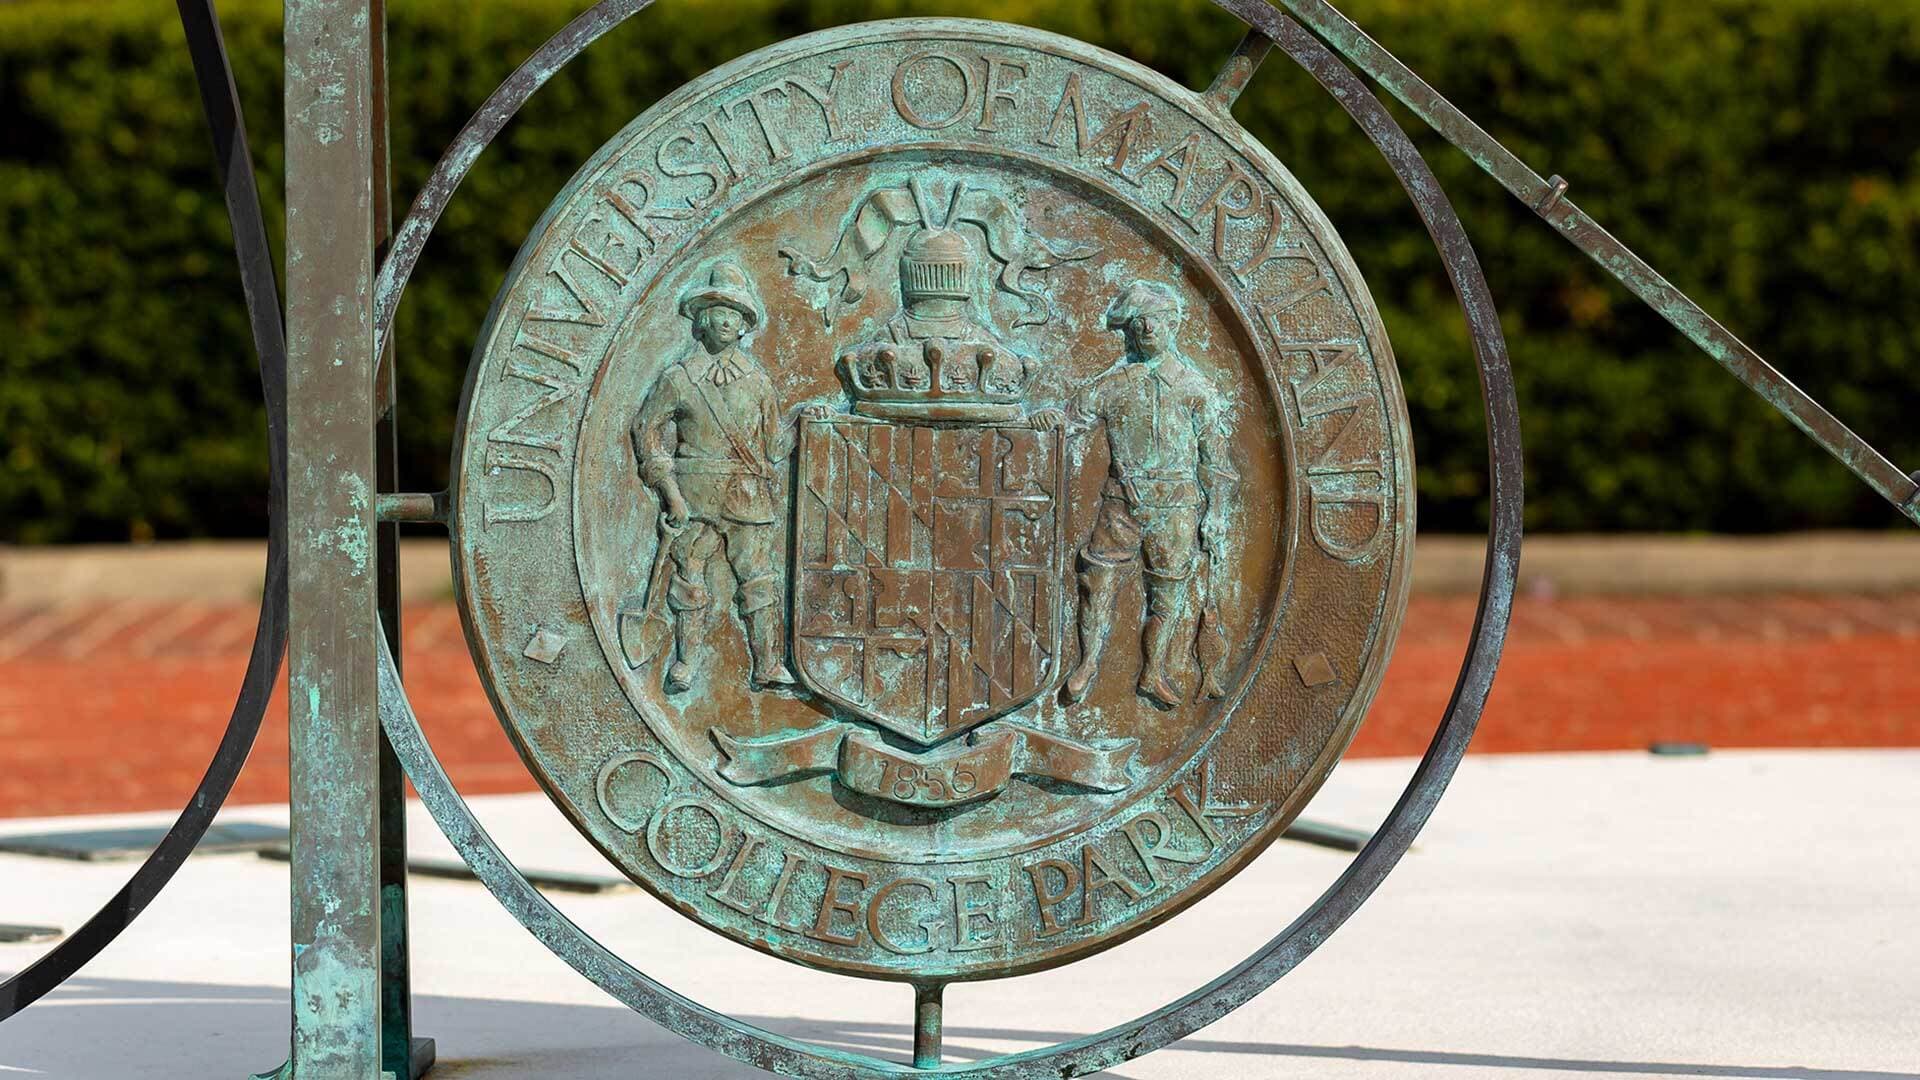 University of Maryland sundial